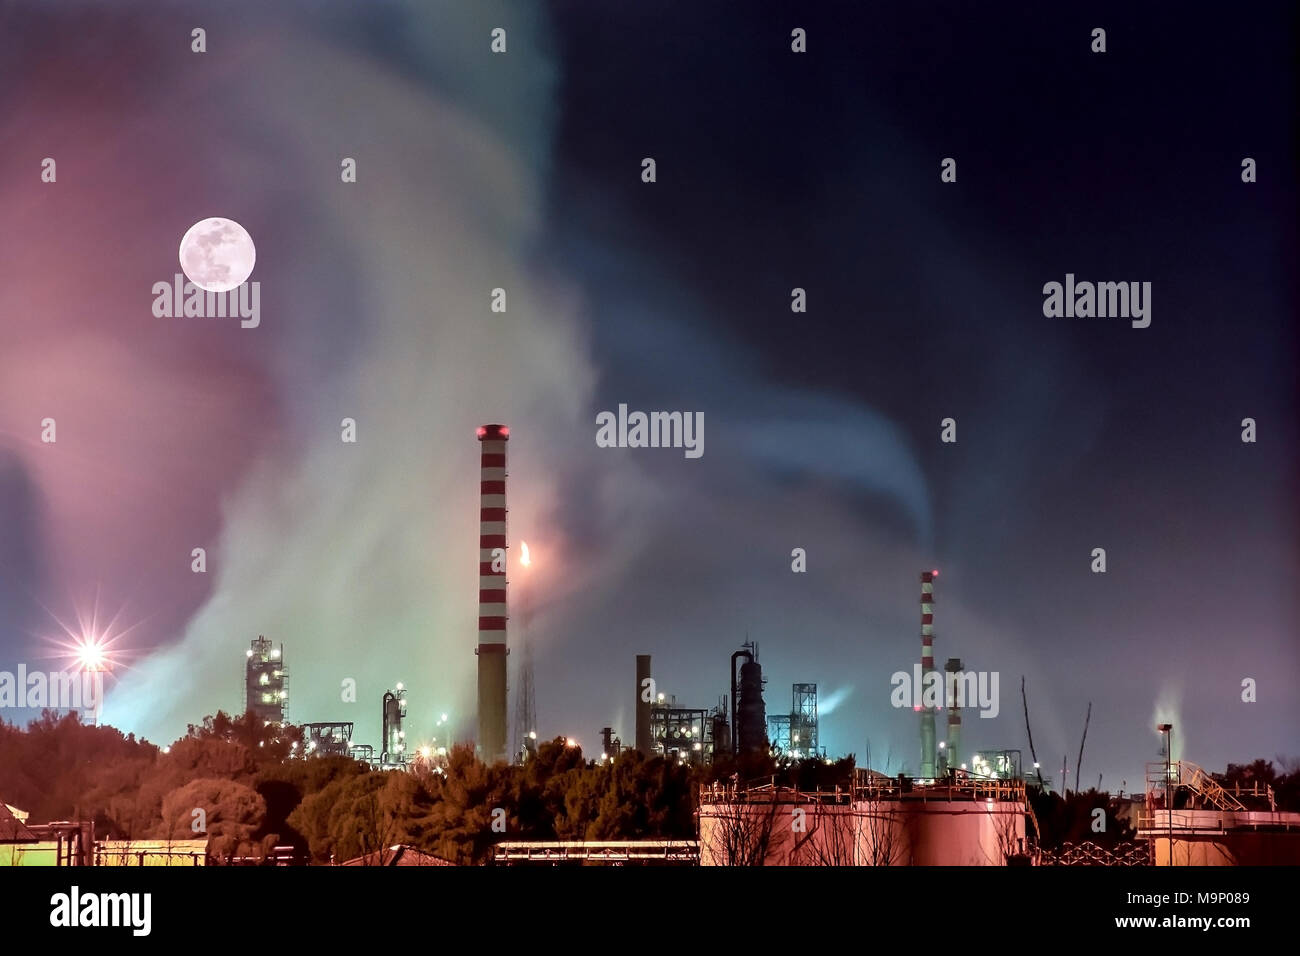 La contaminación del aire producida por una fábrica de aceite, Livorno, Toscana, Italia Foto de stock